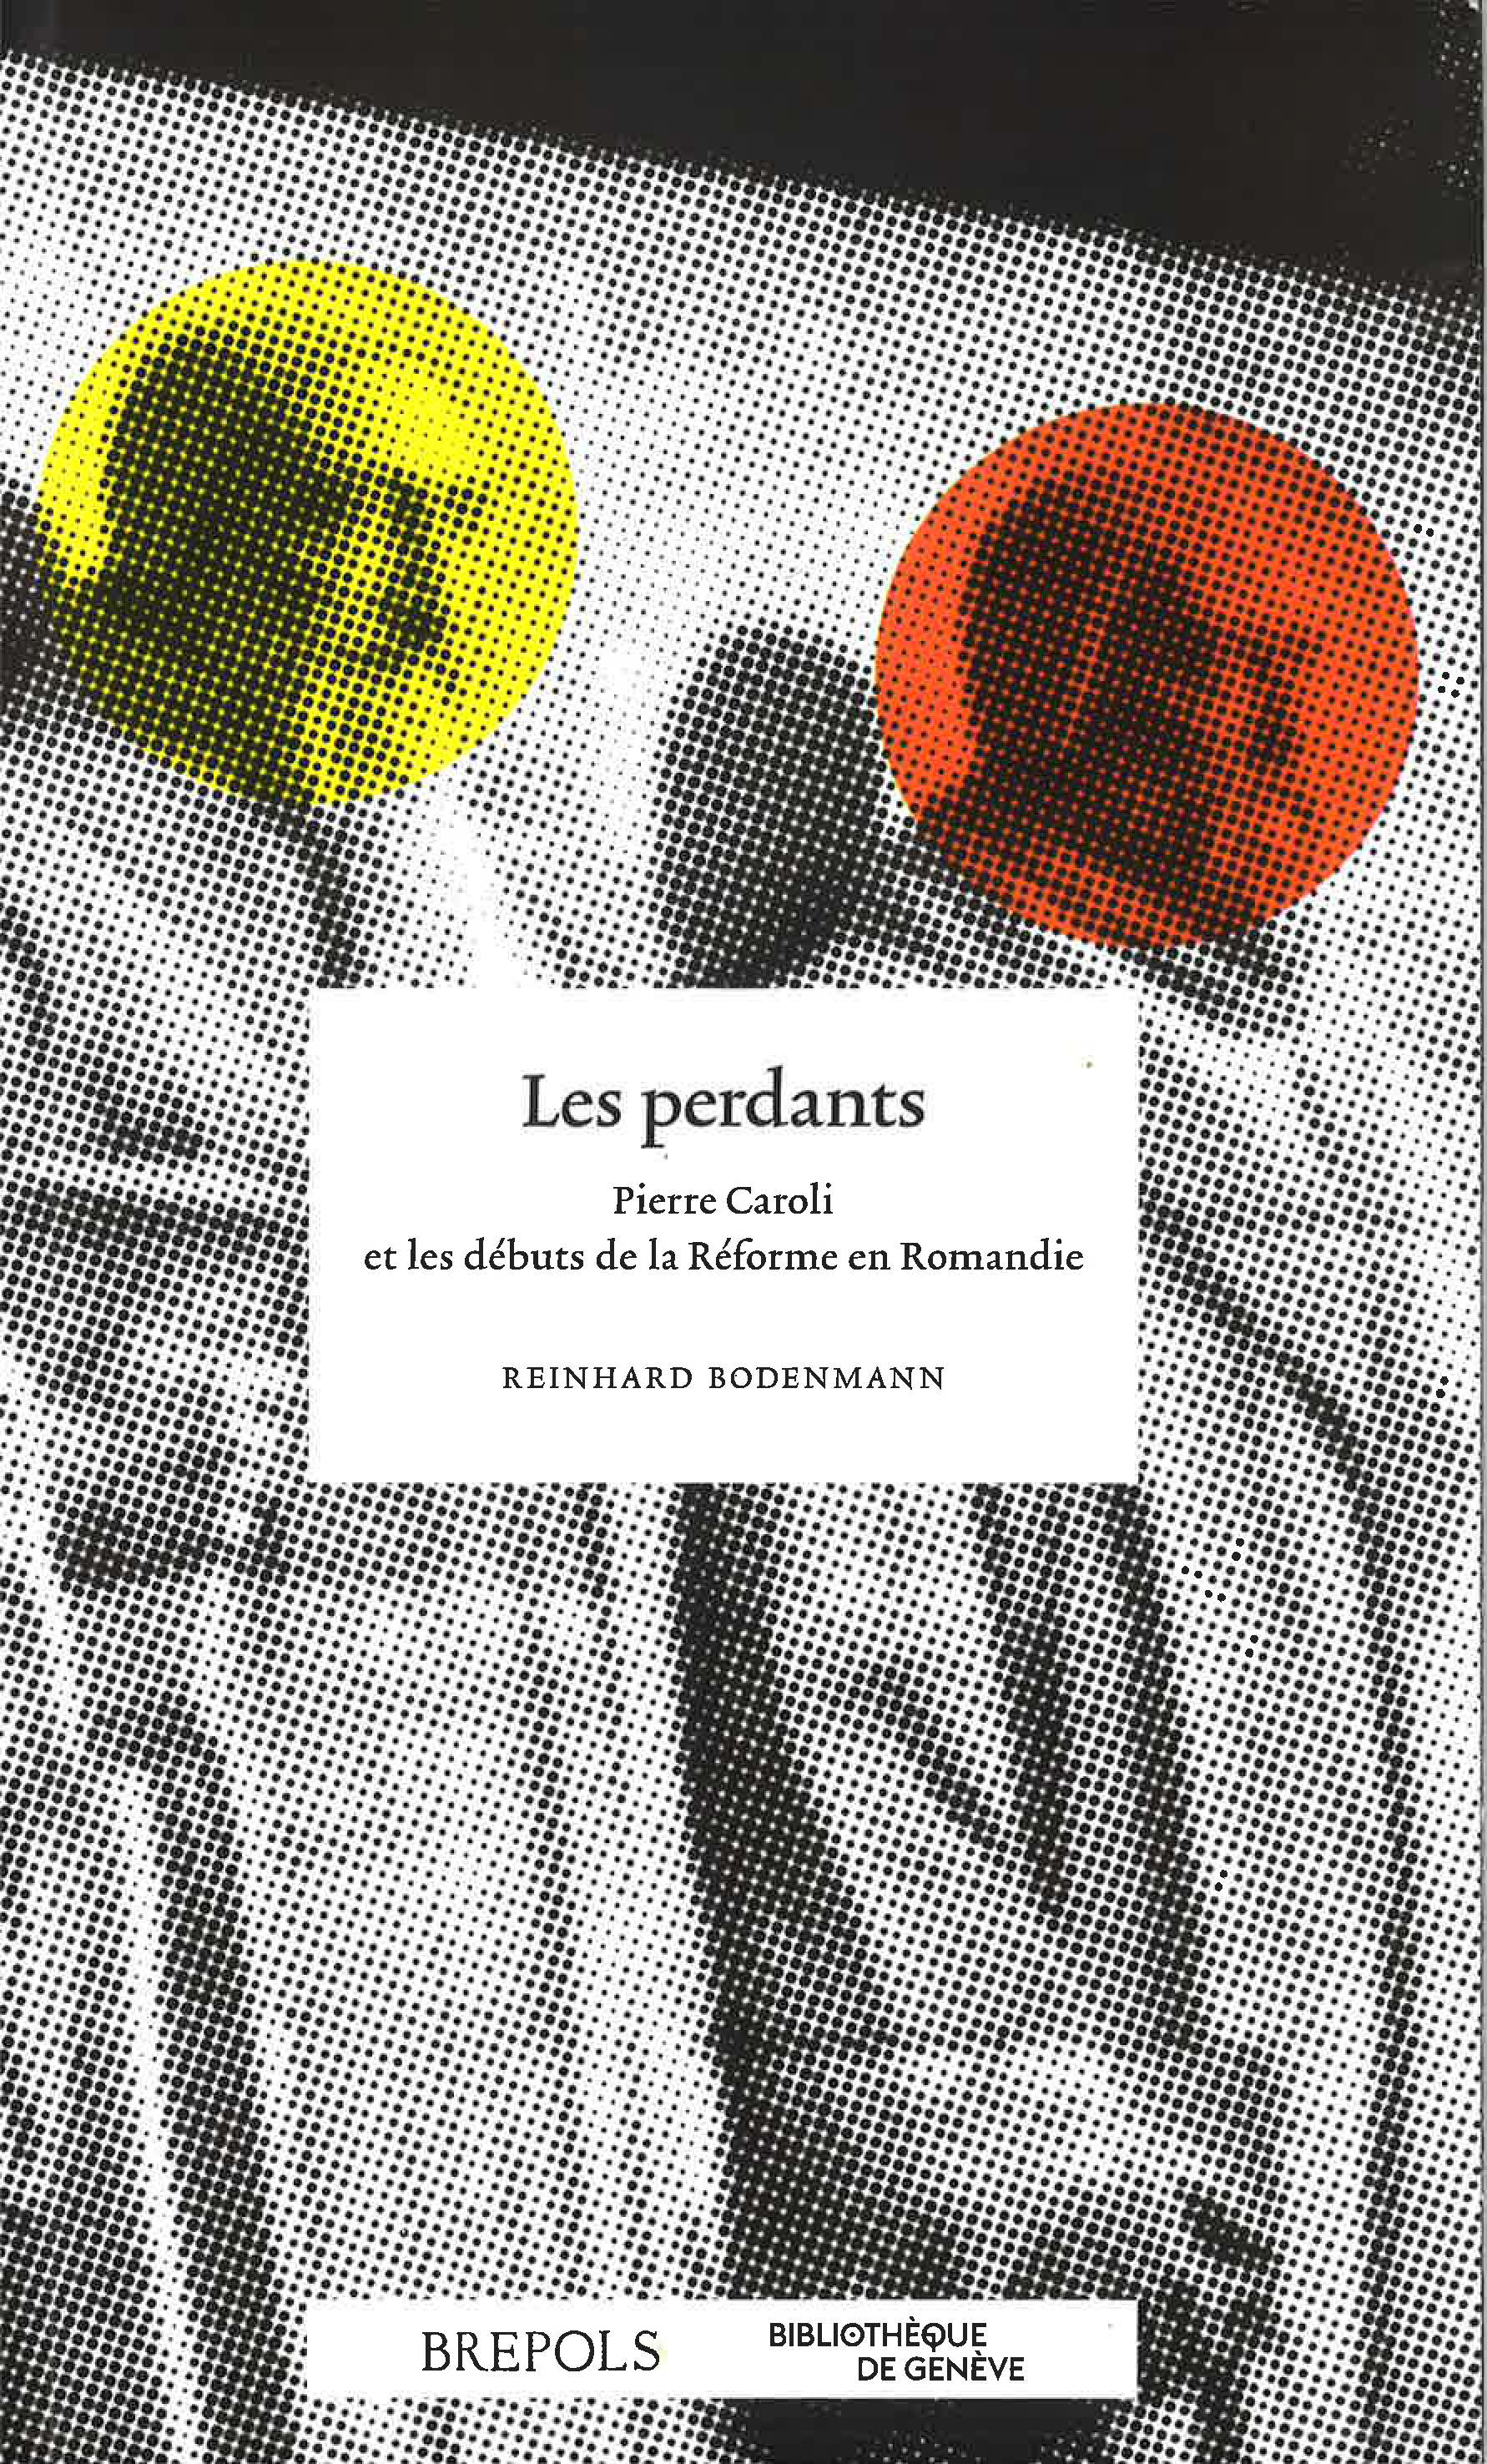 Titelblatt des Buches "Les Perdants"